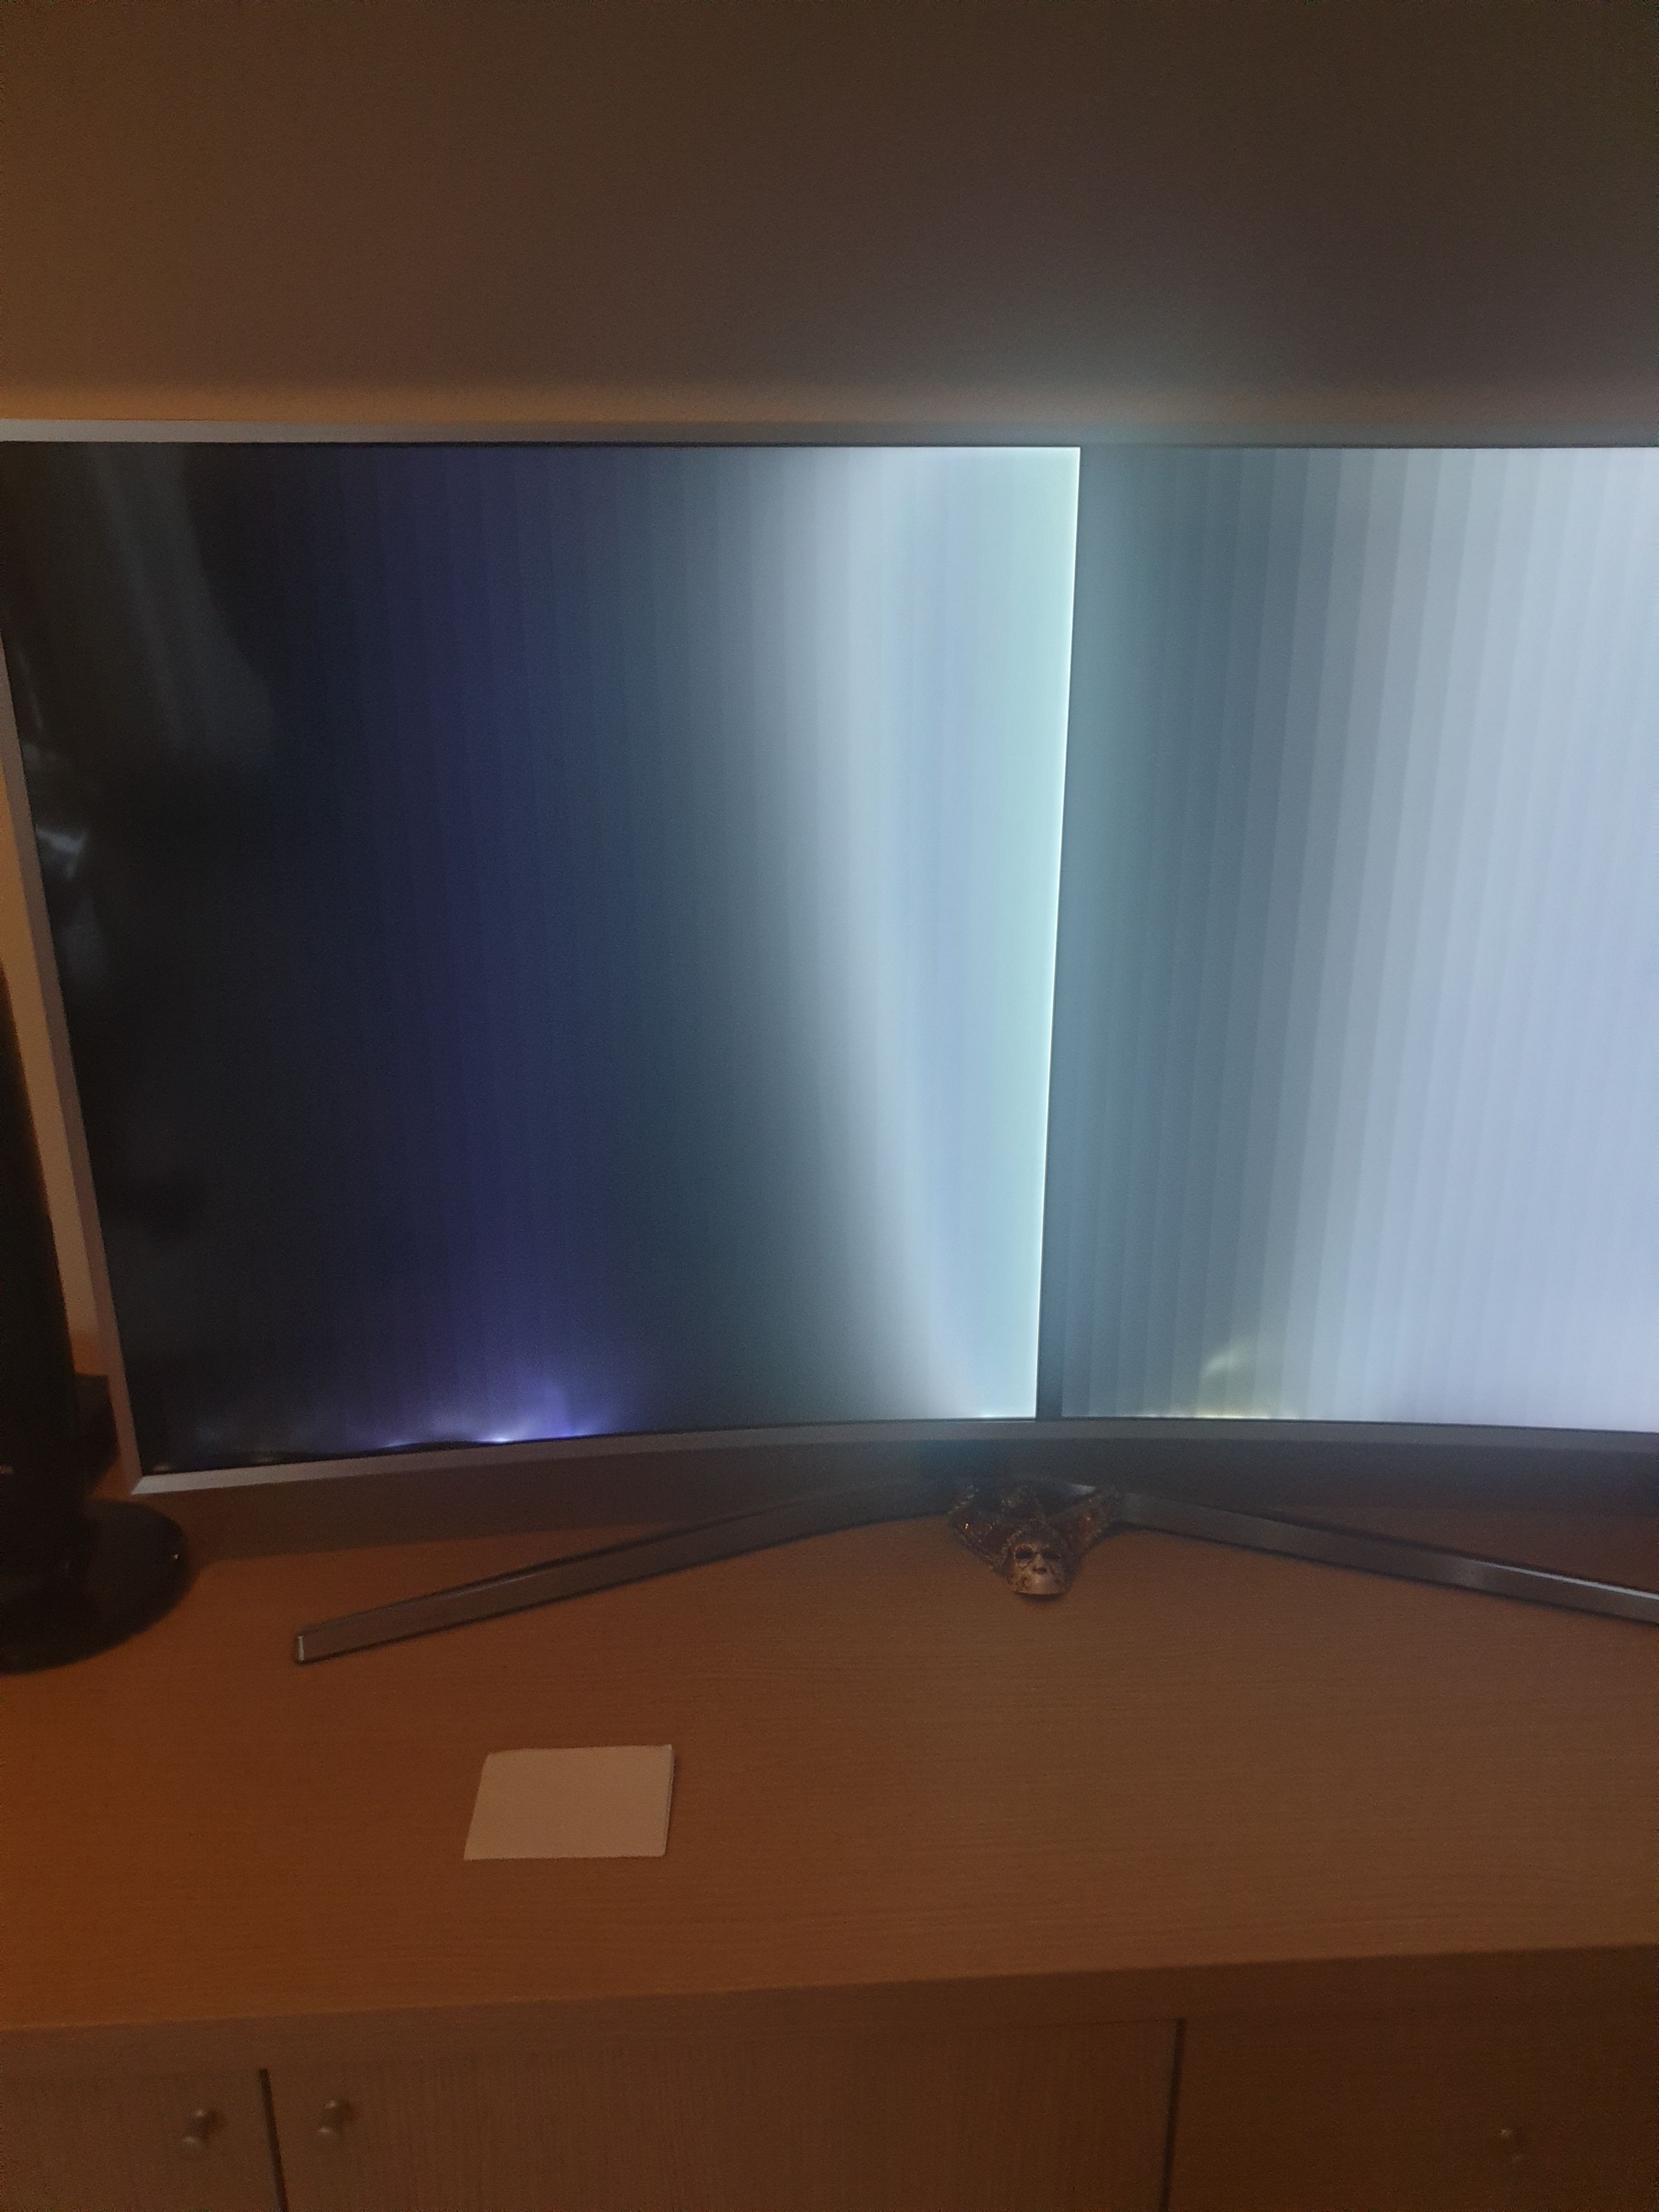 Risolto: Problema schermo SmartTV UE49MU6400 - Samsung Community